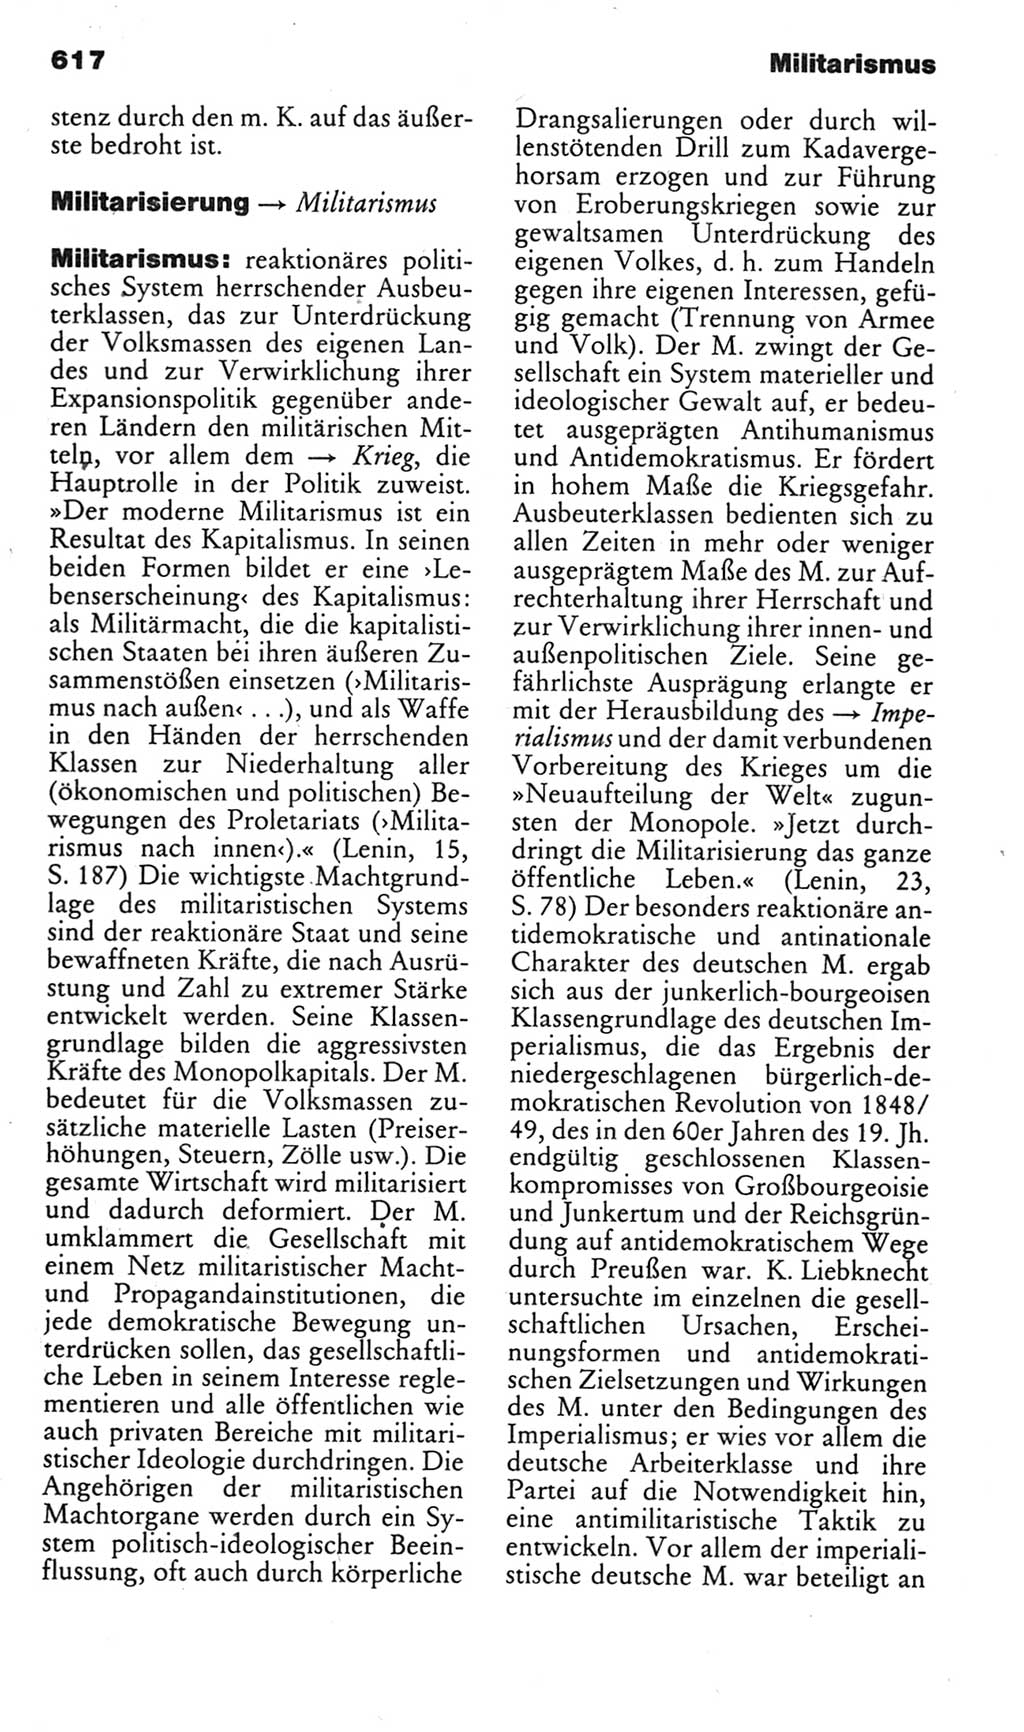 Kleines politisches Wörterbuch [Deutsche Demokratische Republik (DDR)] 1985, Seite 617 (Kl. pol. Wb. DDR 1985, S. 617)